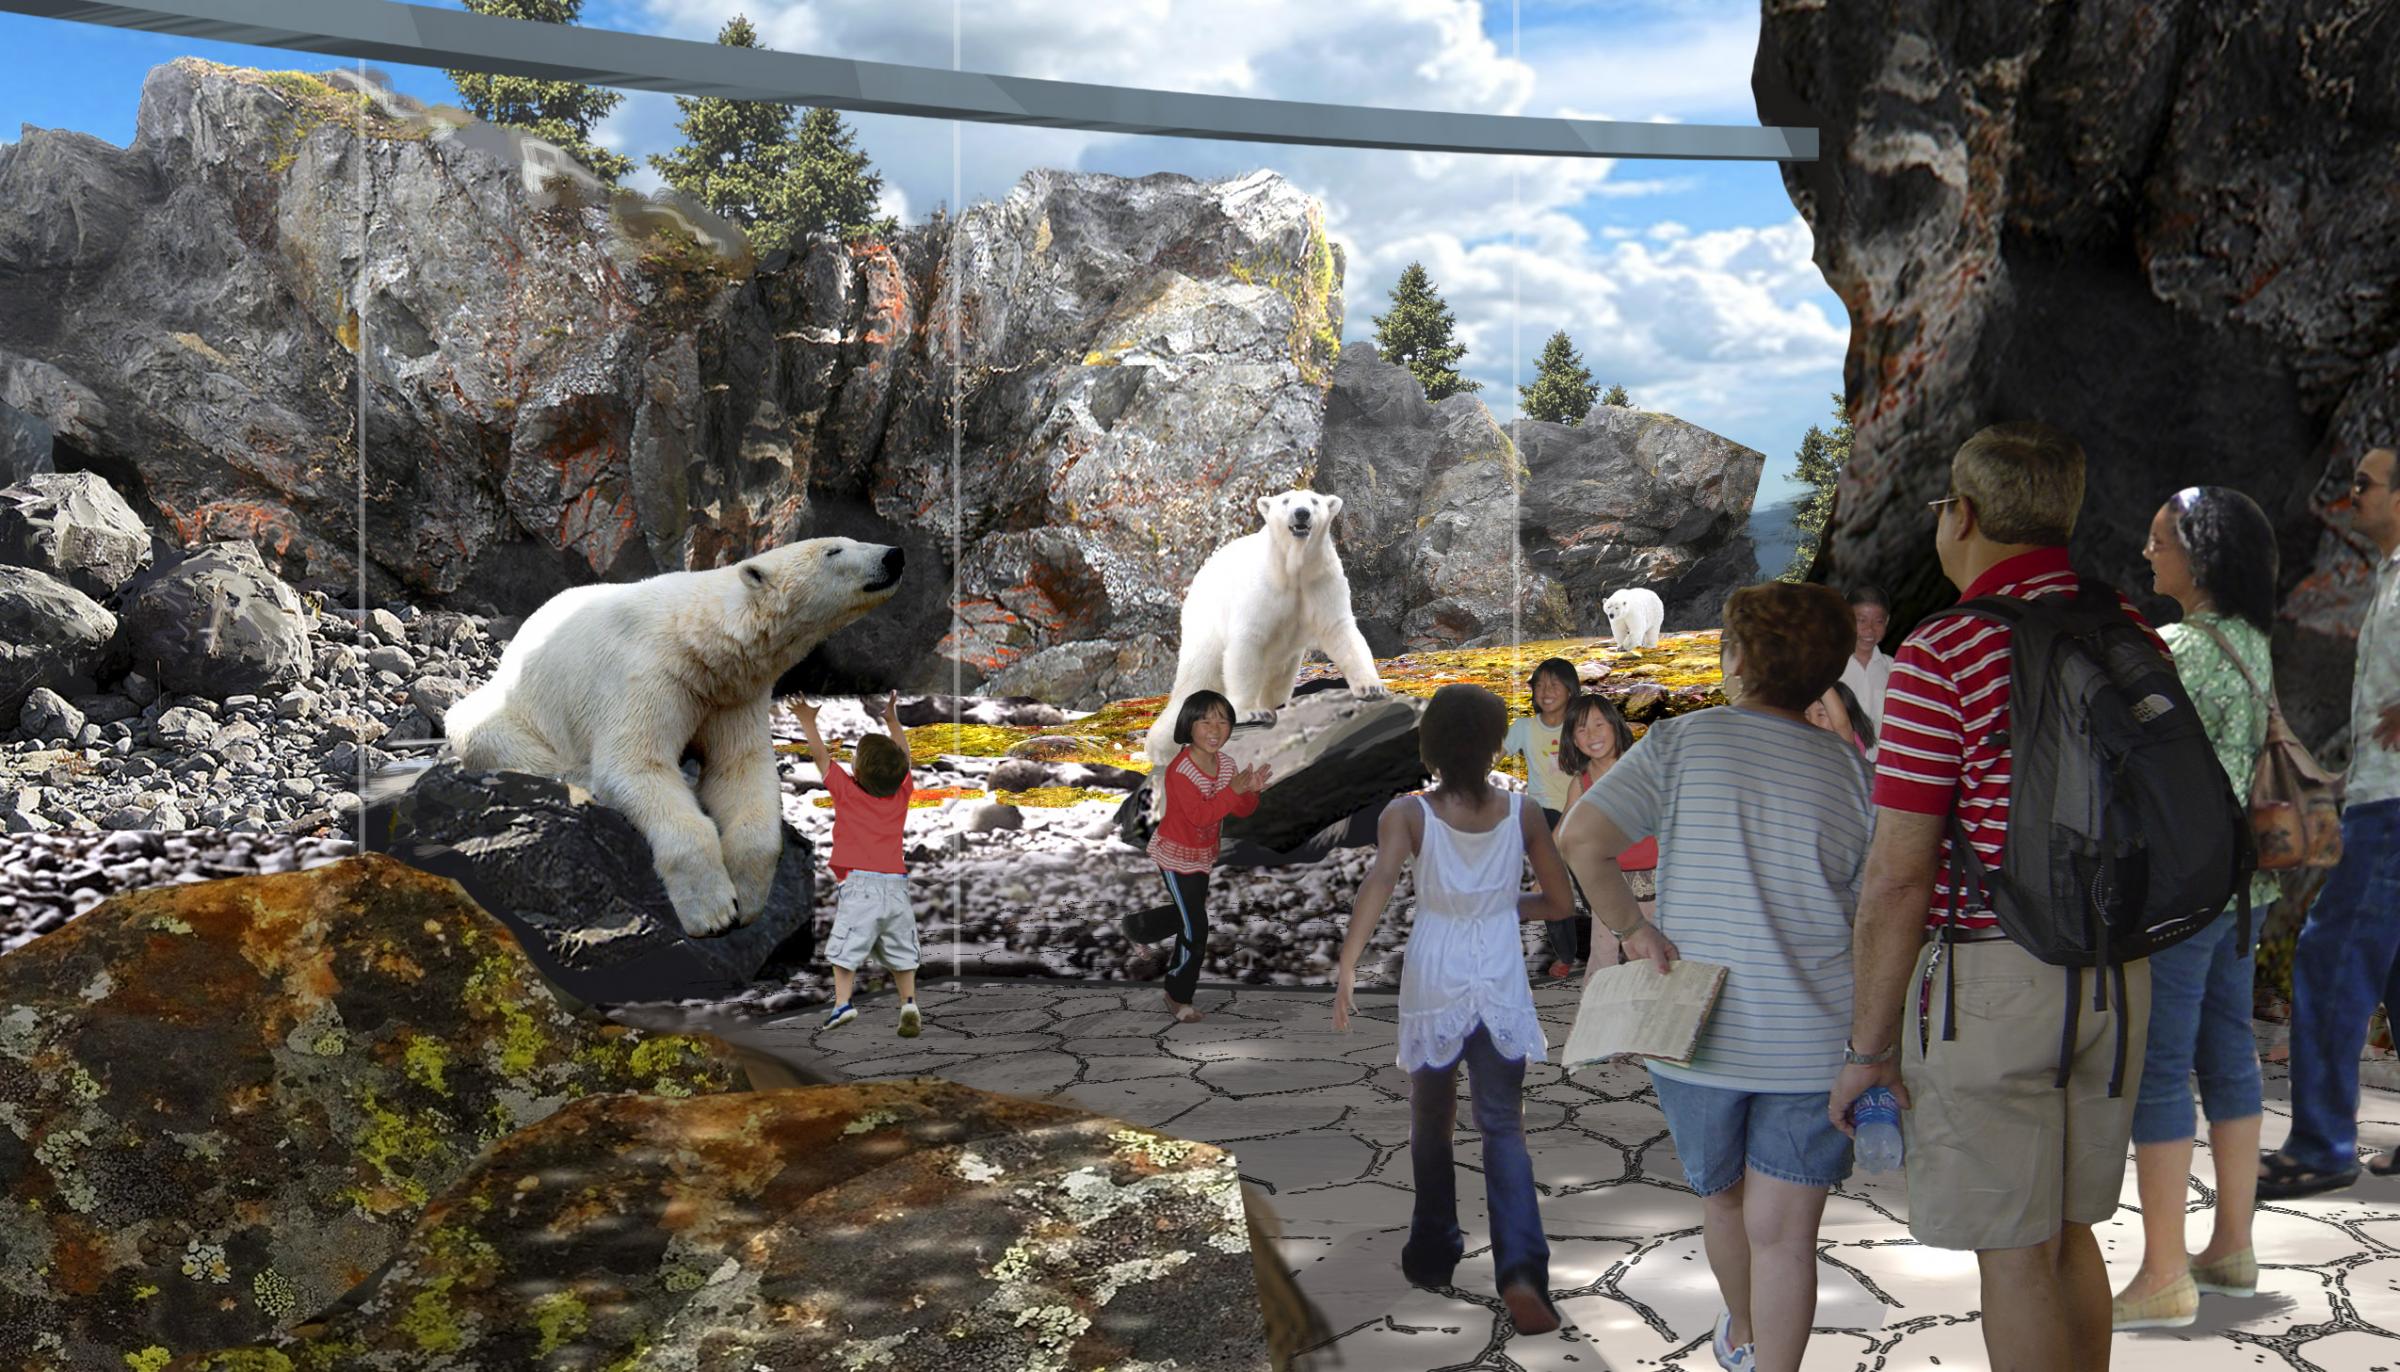 Saint Louis Zoo Shows Off Plans For Its New Polar Bear Exhibit | St. Louis Public Radio